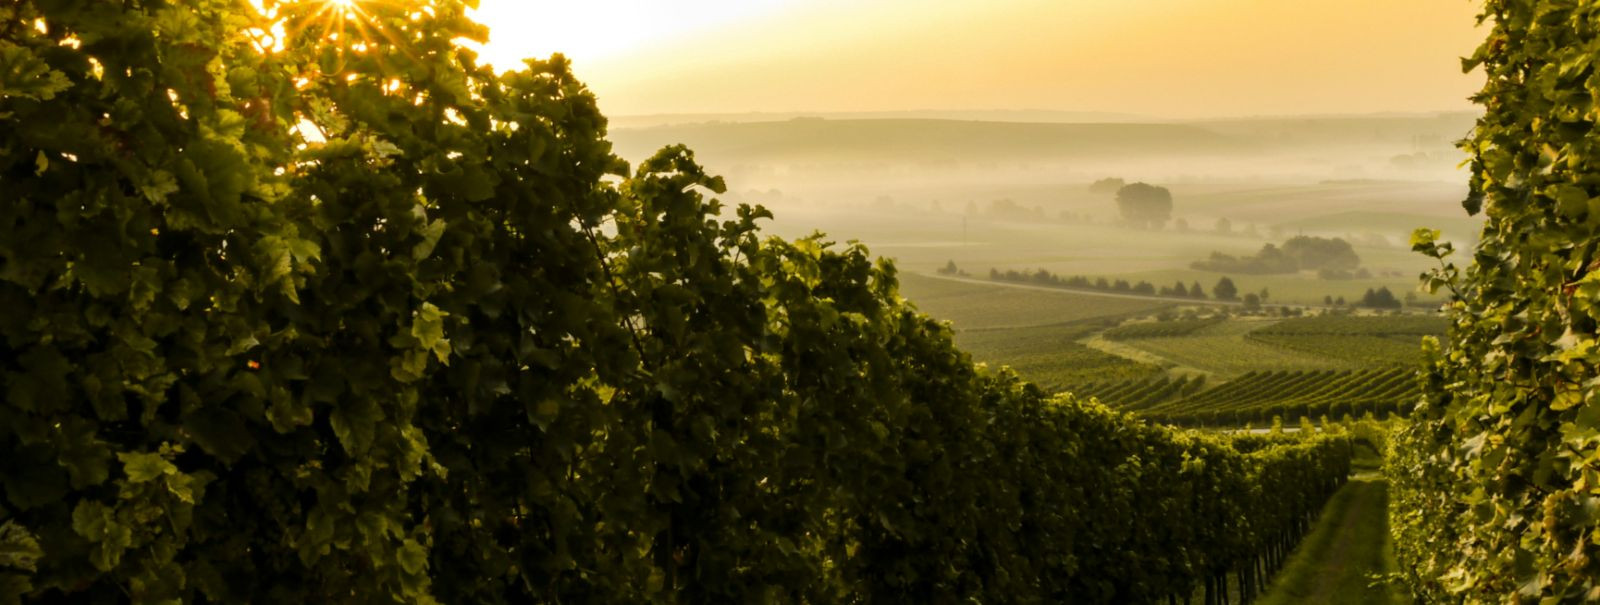 Gruusia veinivalmistamise ajalugu on sama rikas kui muld, mis toidab selle viinapuid. Arheoloogilised tõendid viitavad sellele, et see väike mägine riik Kaukaas